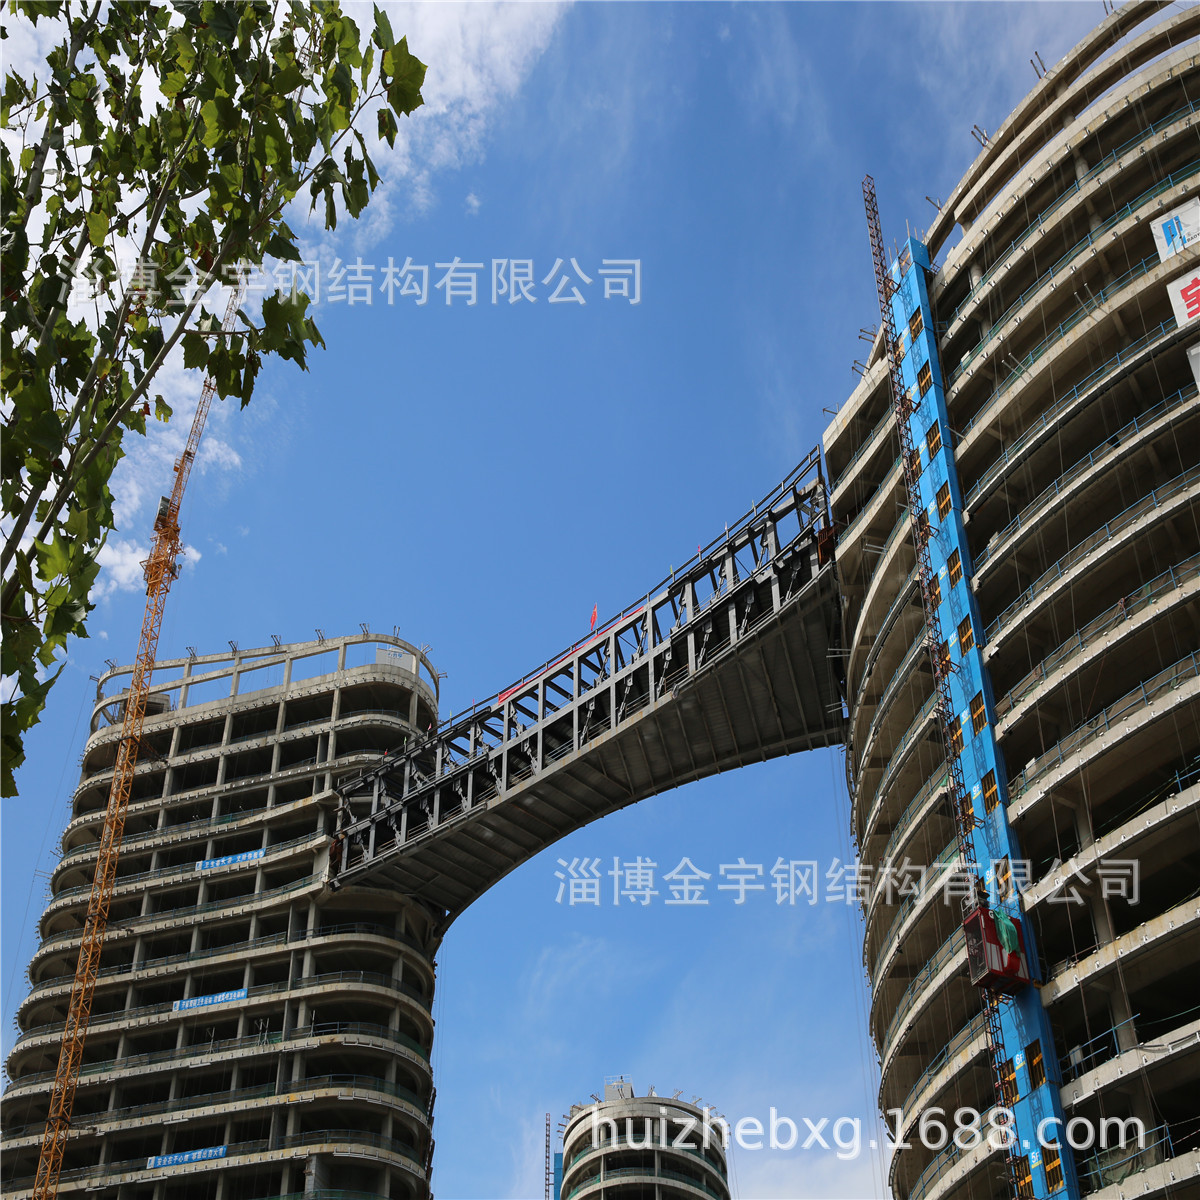 专业生产加工销售 高质量高强度 北京钢结构装配式住宅